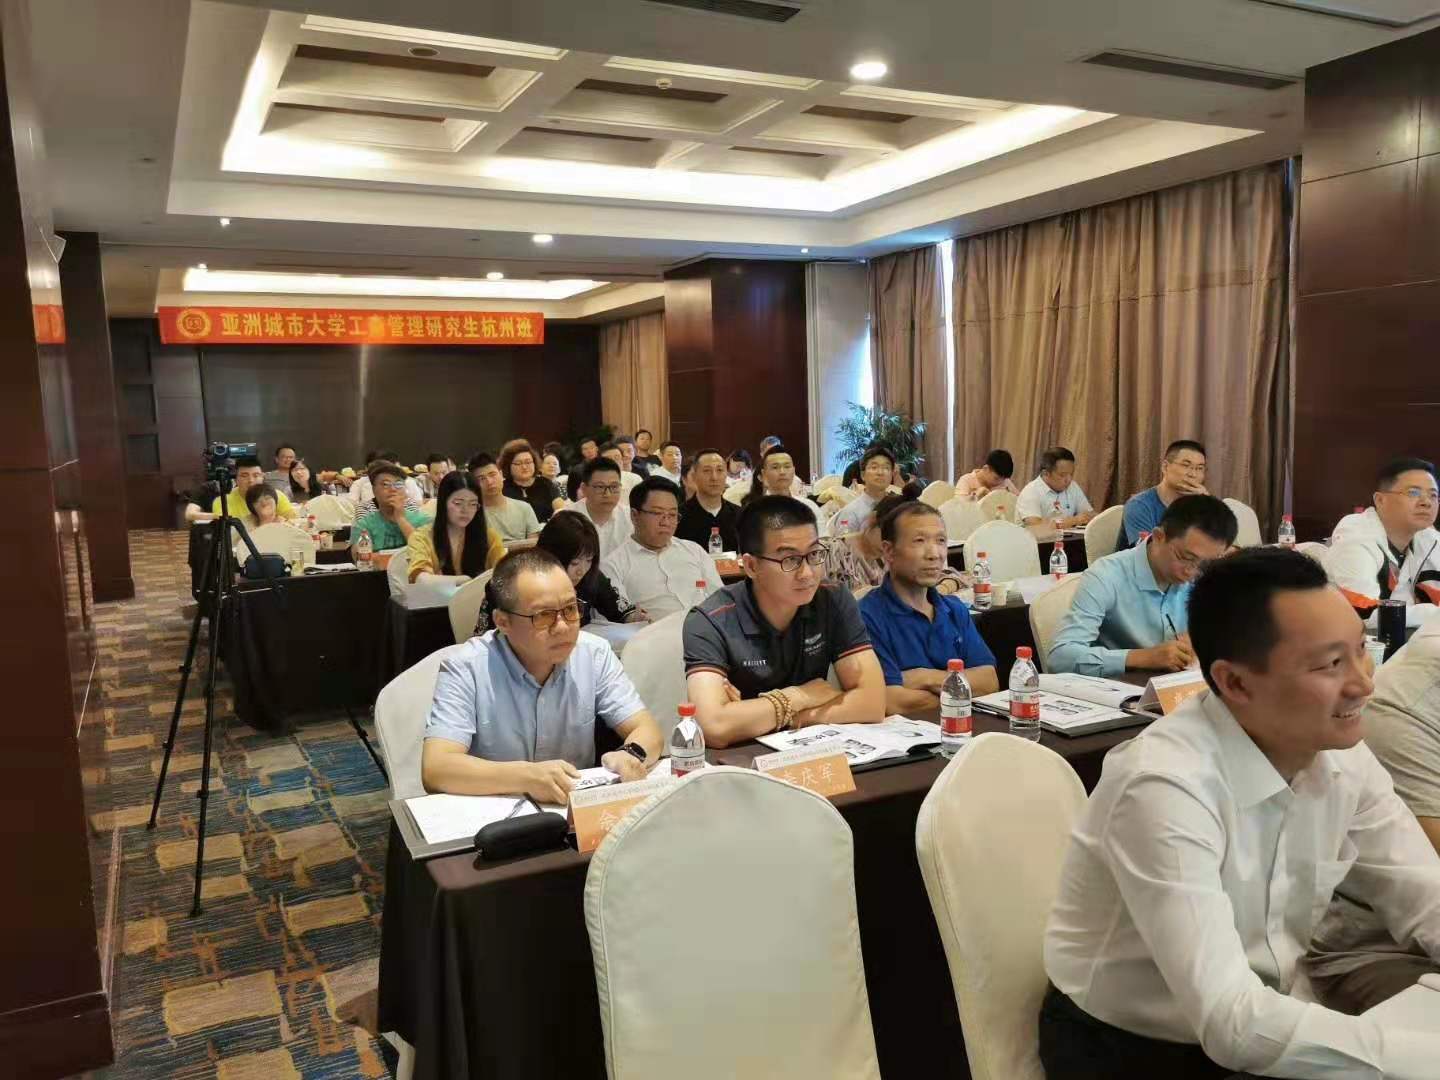  南孔教育|亚洲城市大学MBA杭州班《易经智慧应用》课程回顾